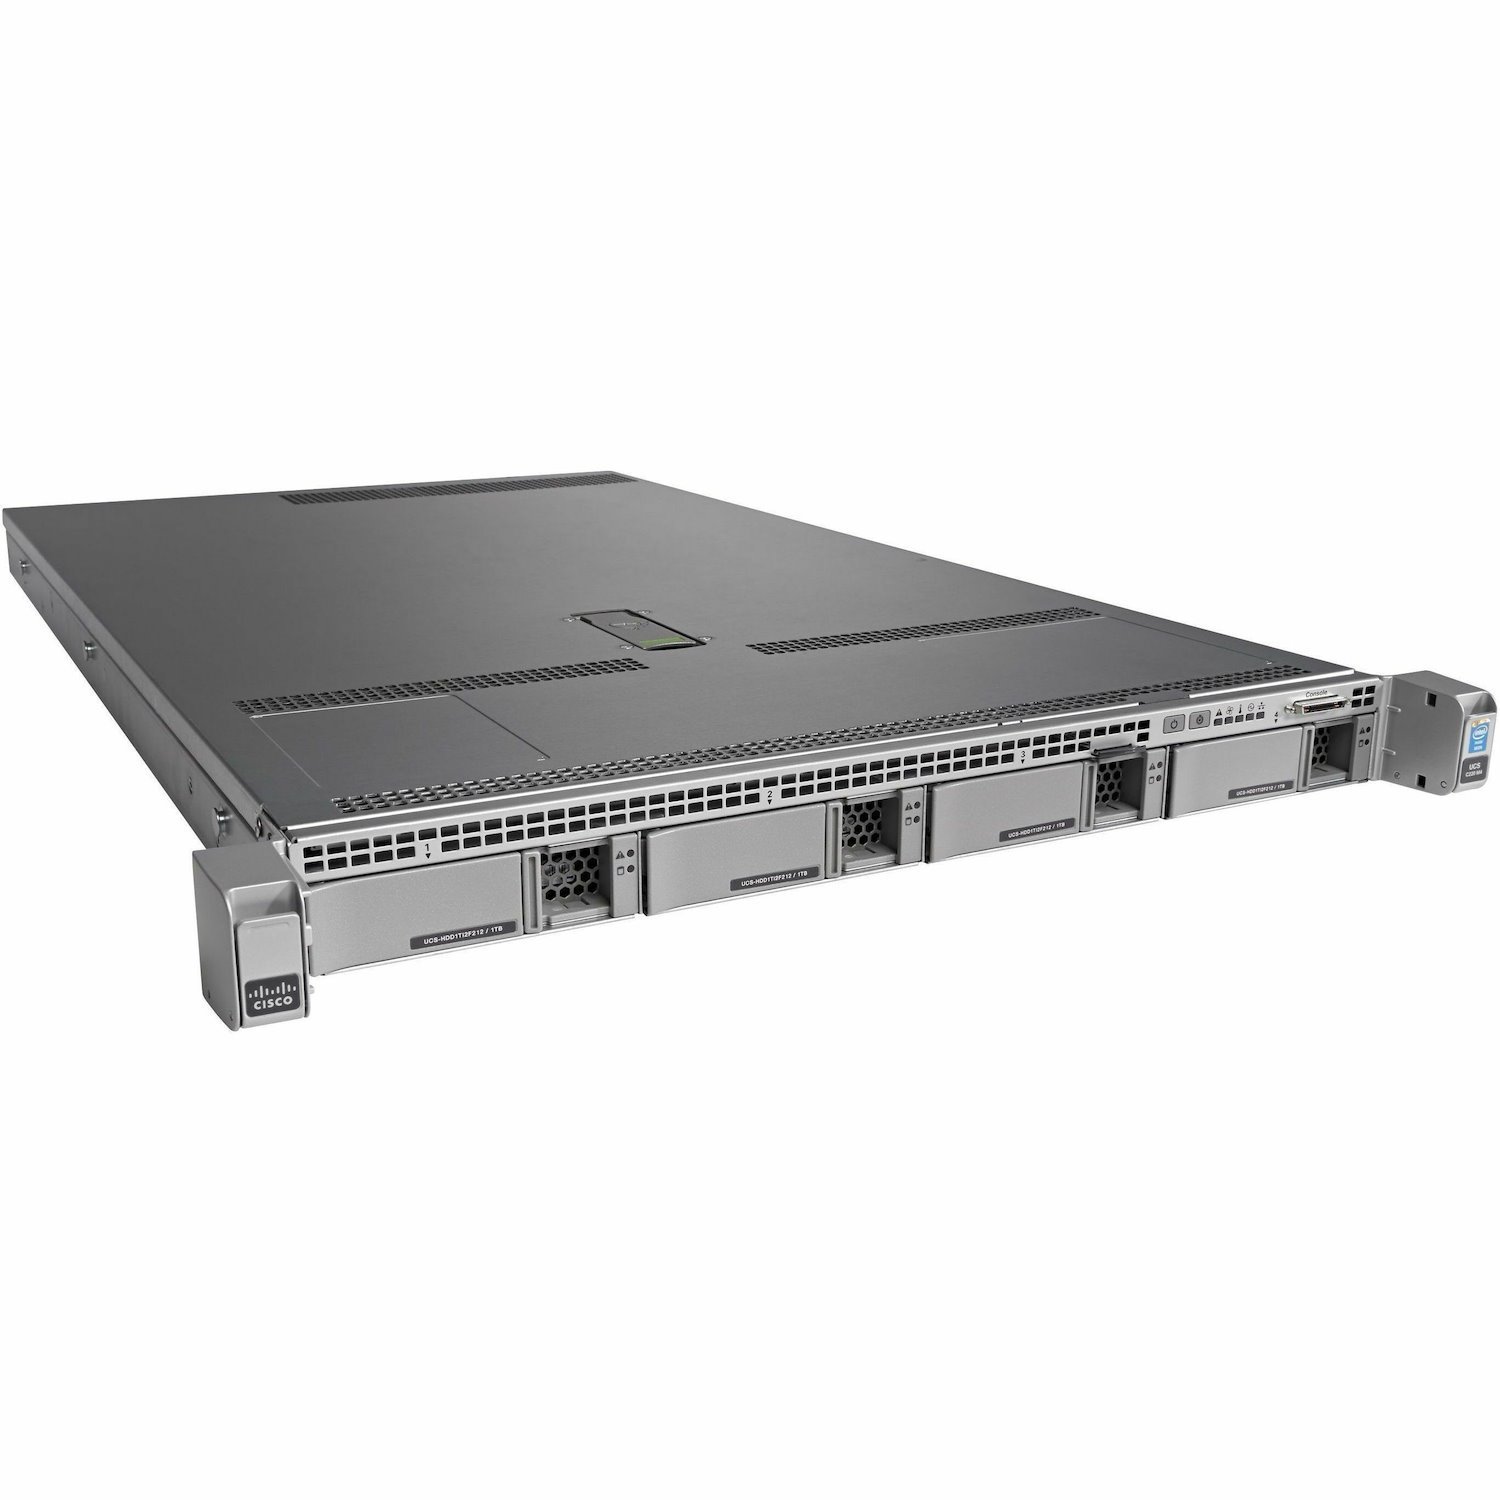 Cisco C220 M4 1U Small Form Factor Server - 2 x Intel Xeon E5-2670 v3 2.30 GHz - 128 GB RAM - Serial ATA/600 Controller